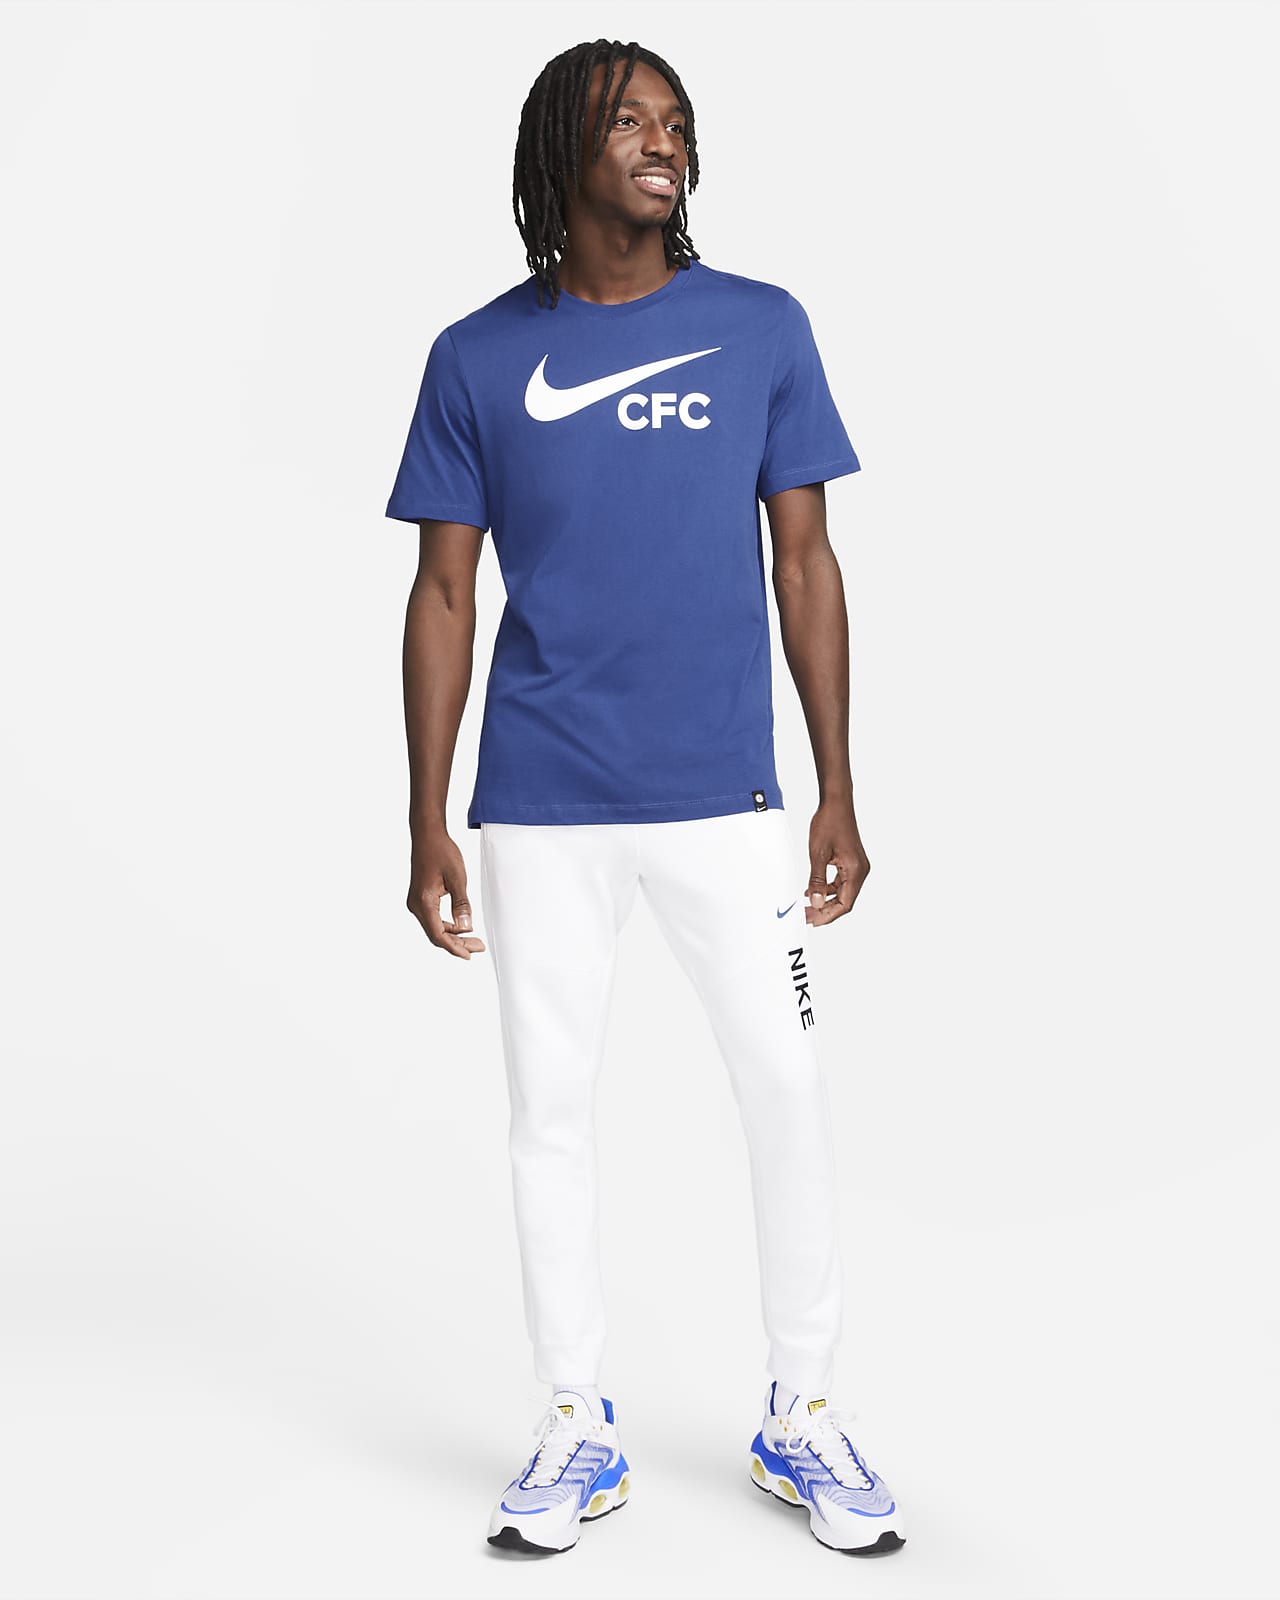 Chelsea FC Men's Soccer T-Shirt.